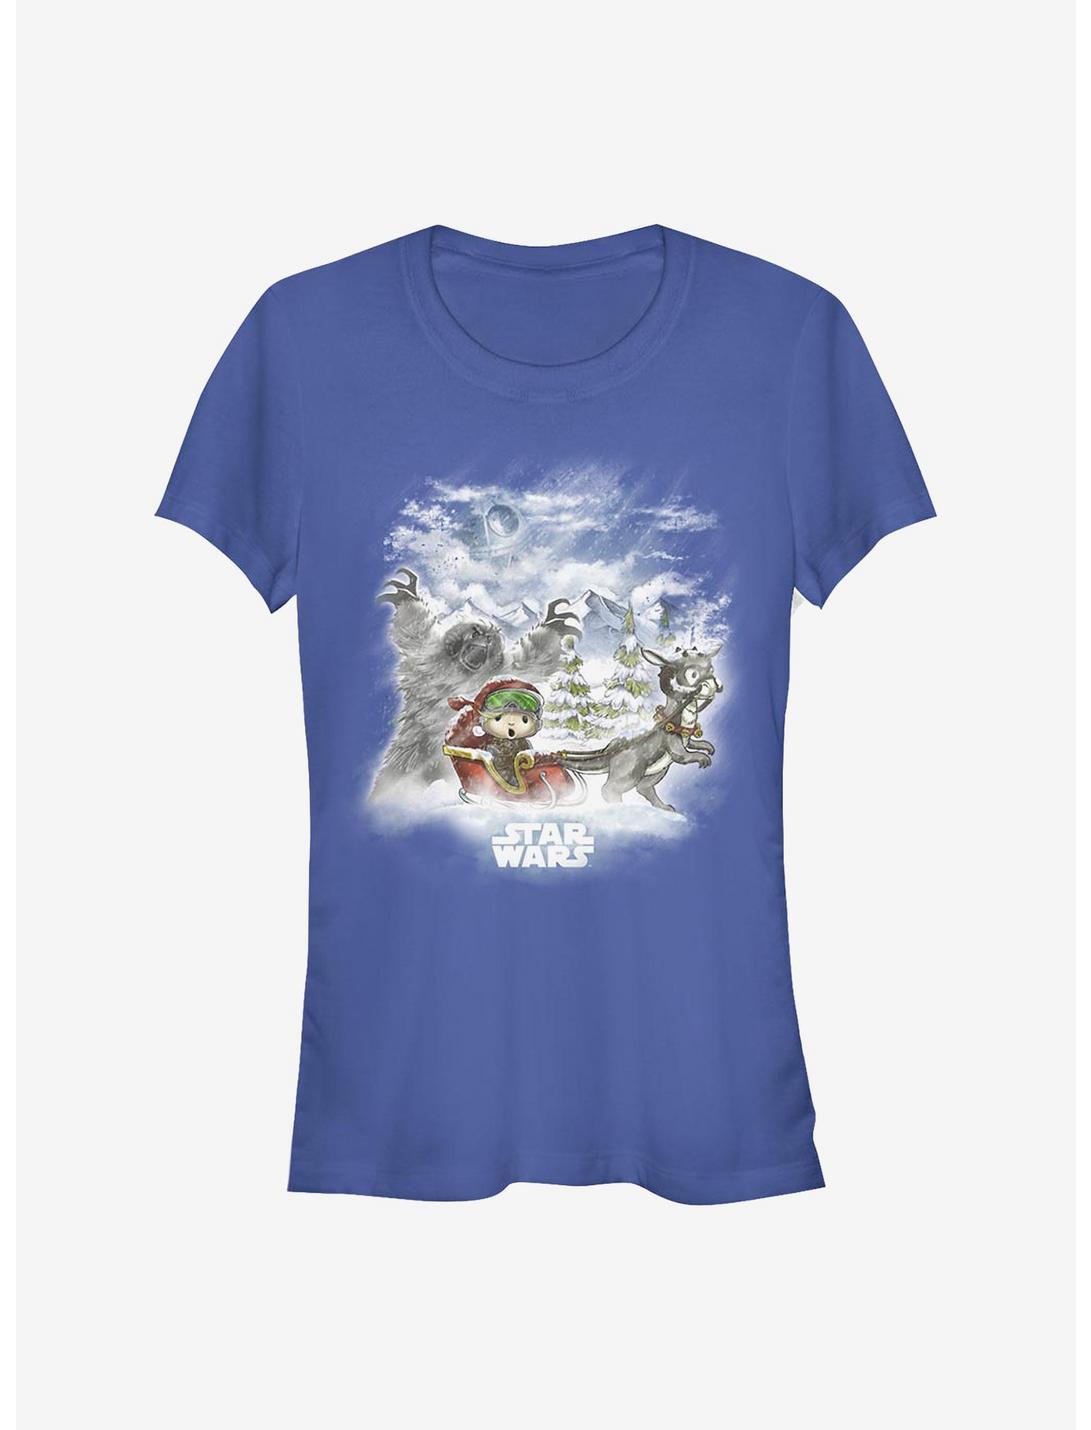 Star Wars Lukes Holiday Story Girls T-Shirt, ROYAL, hi-res